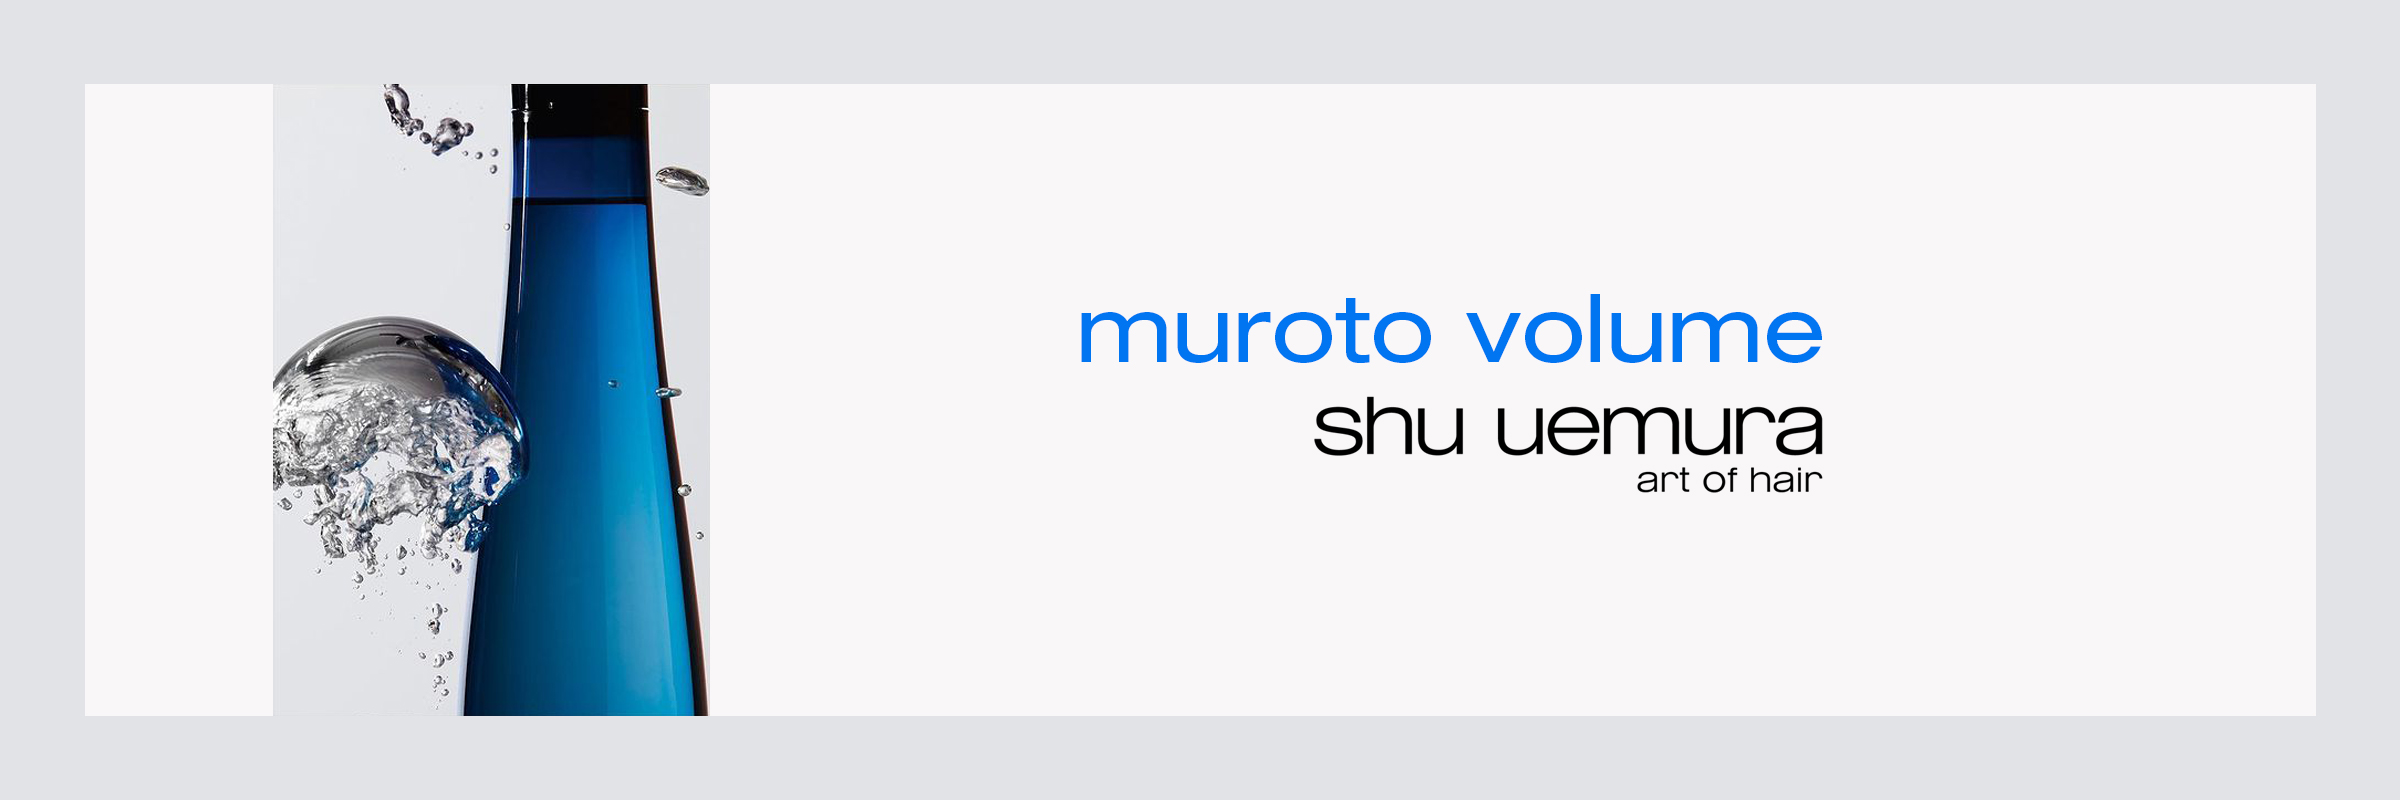 Shu Uemura Muroto Volume